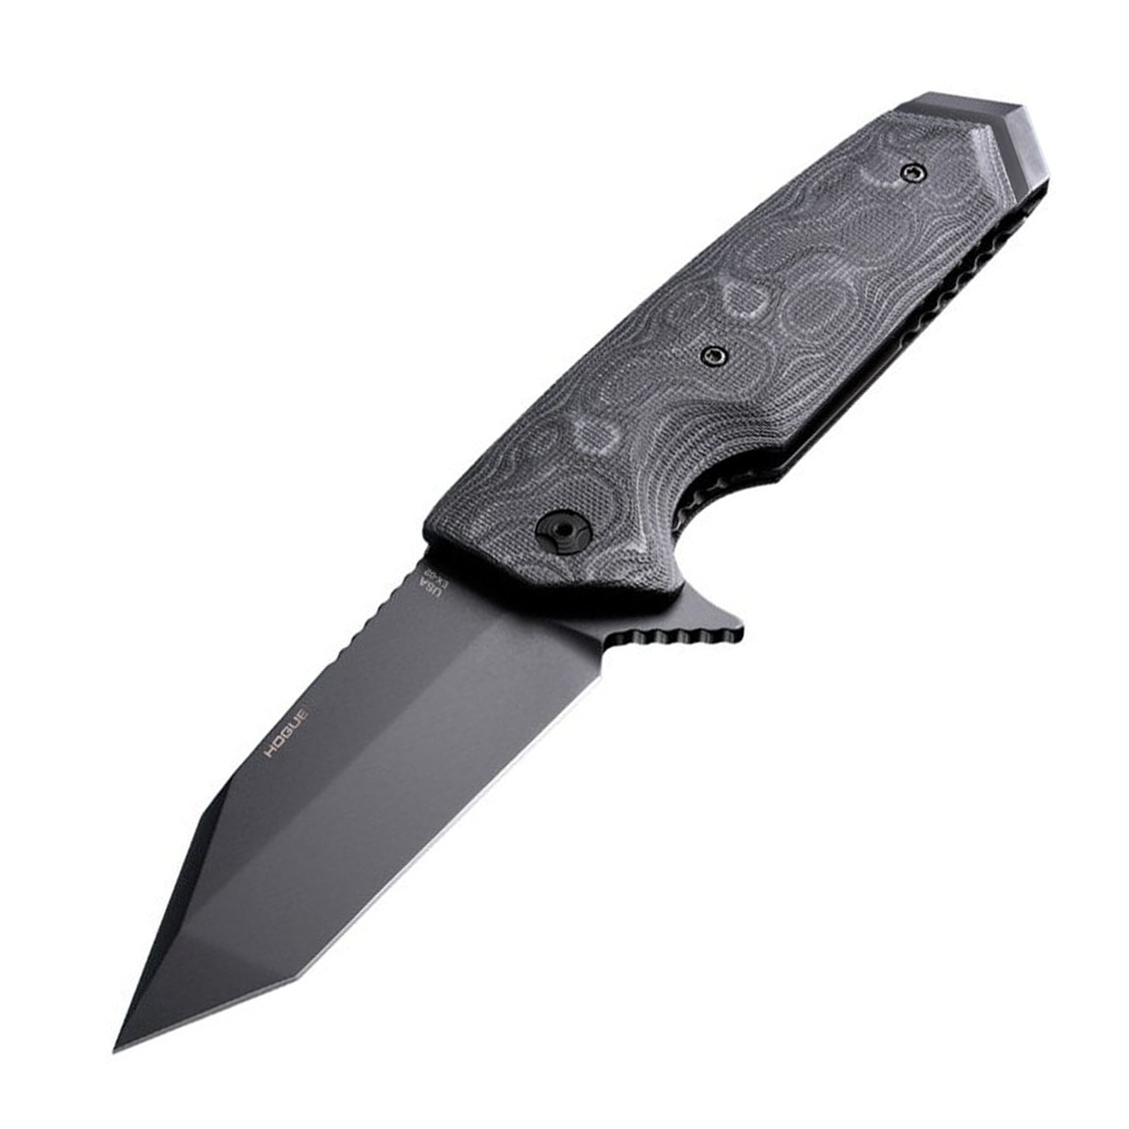 Нож складной туристический Hogue EX-02 Tanto, сталь 154CM, рукоять стеклотекстолит G-Mascus®, чёрный нож складной туристический hogue ex 02 tanto сталь 154cm рукоять g mascus® темно серый